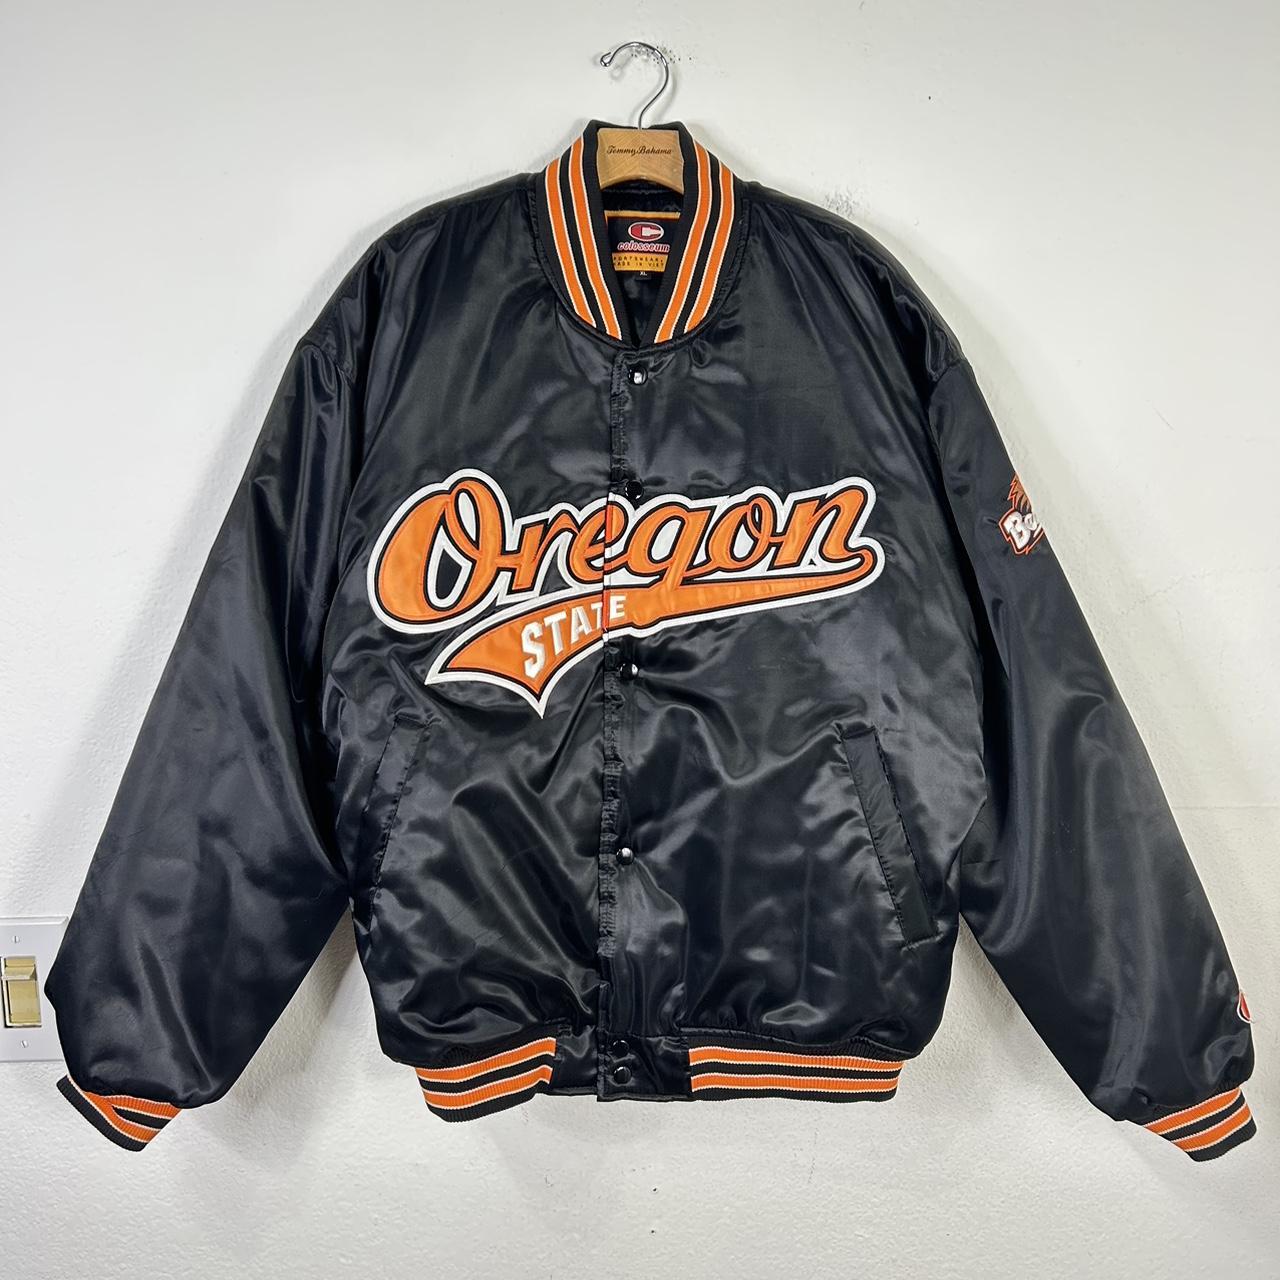 90s vintage OREGON Beavers stadium jacket., nice...